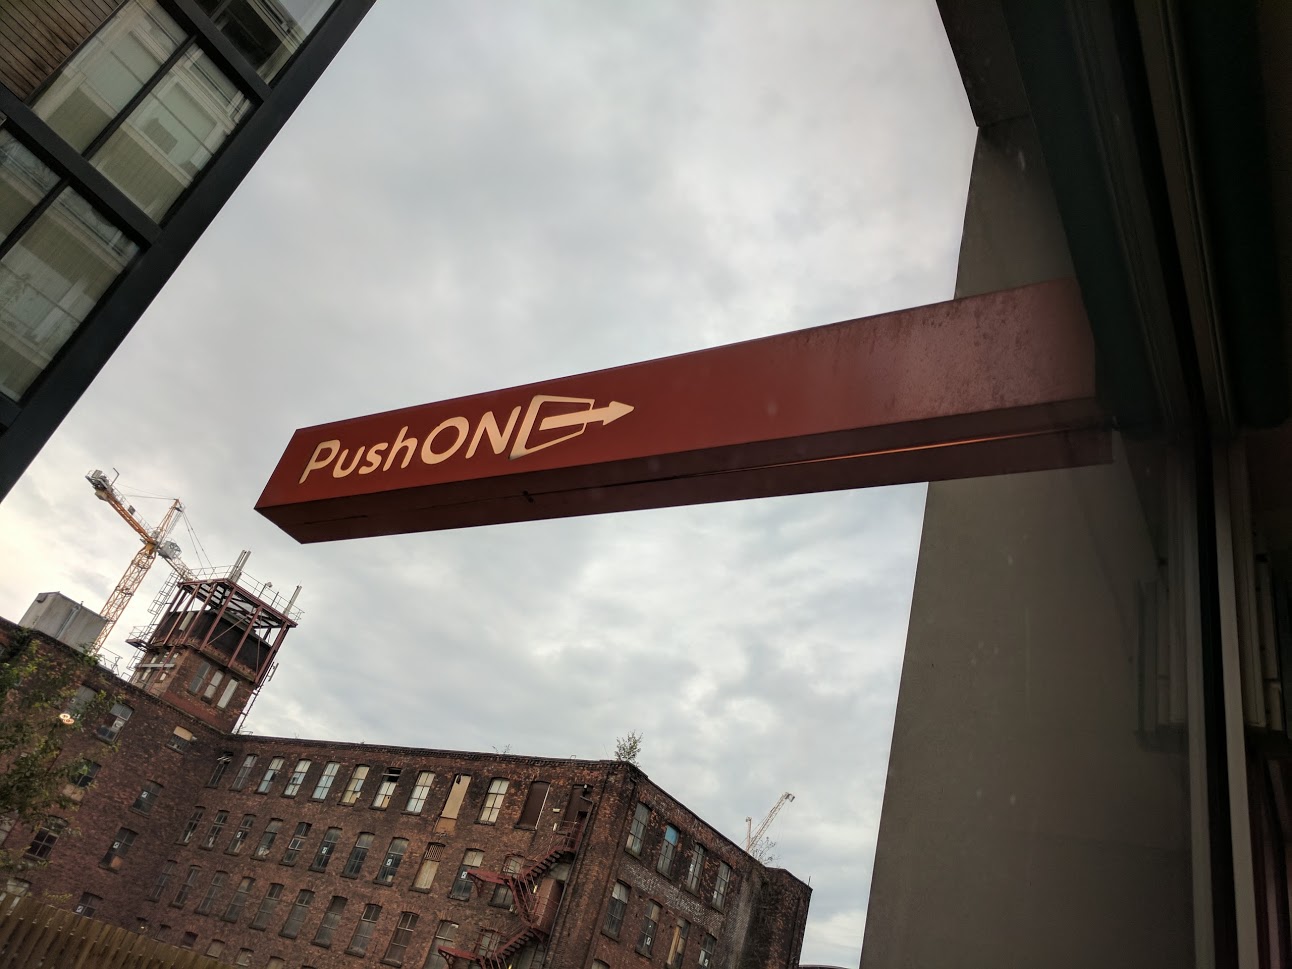 PushON signage